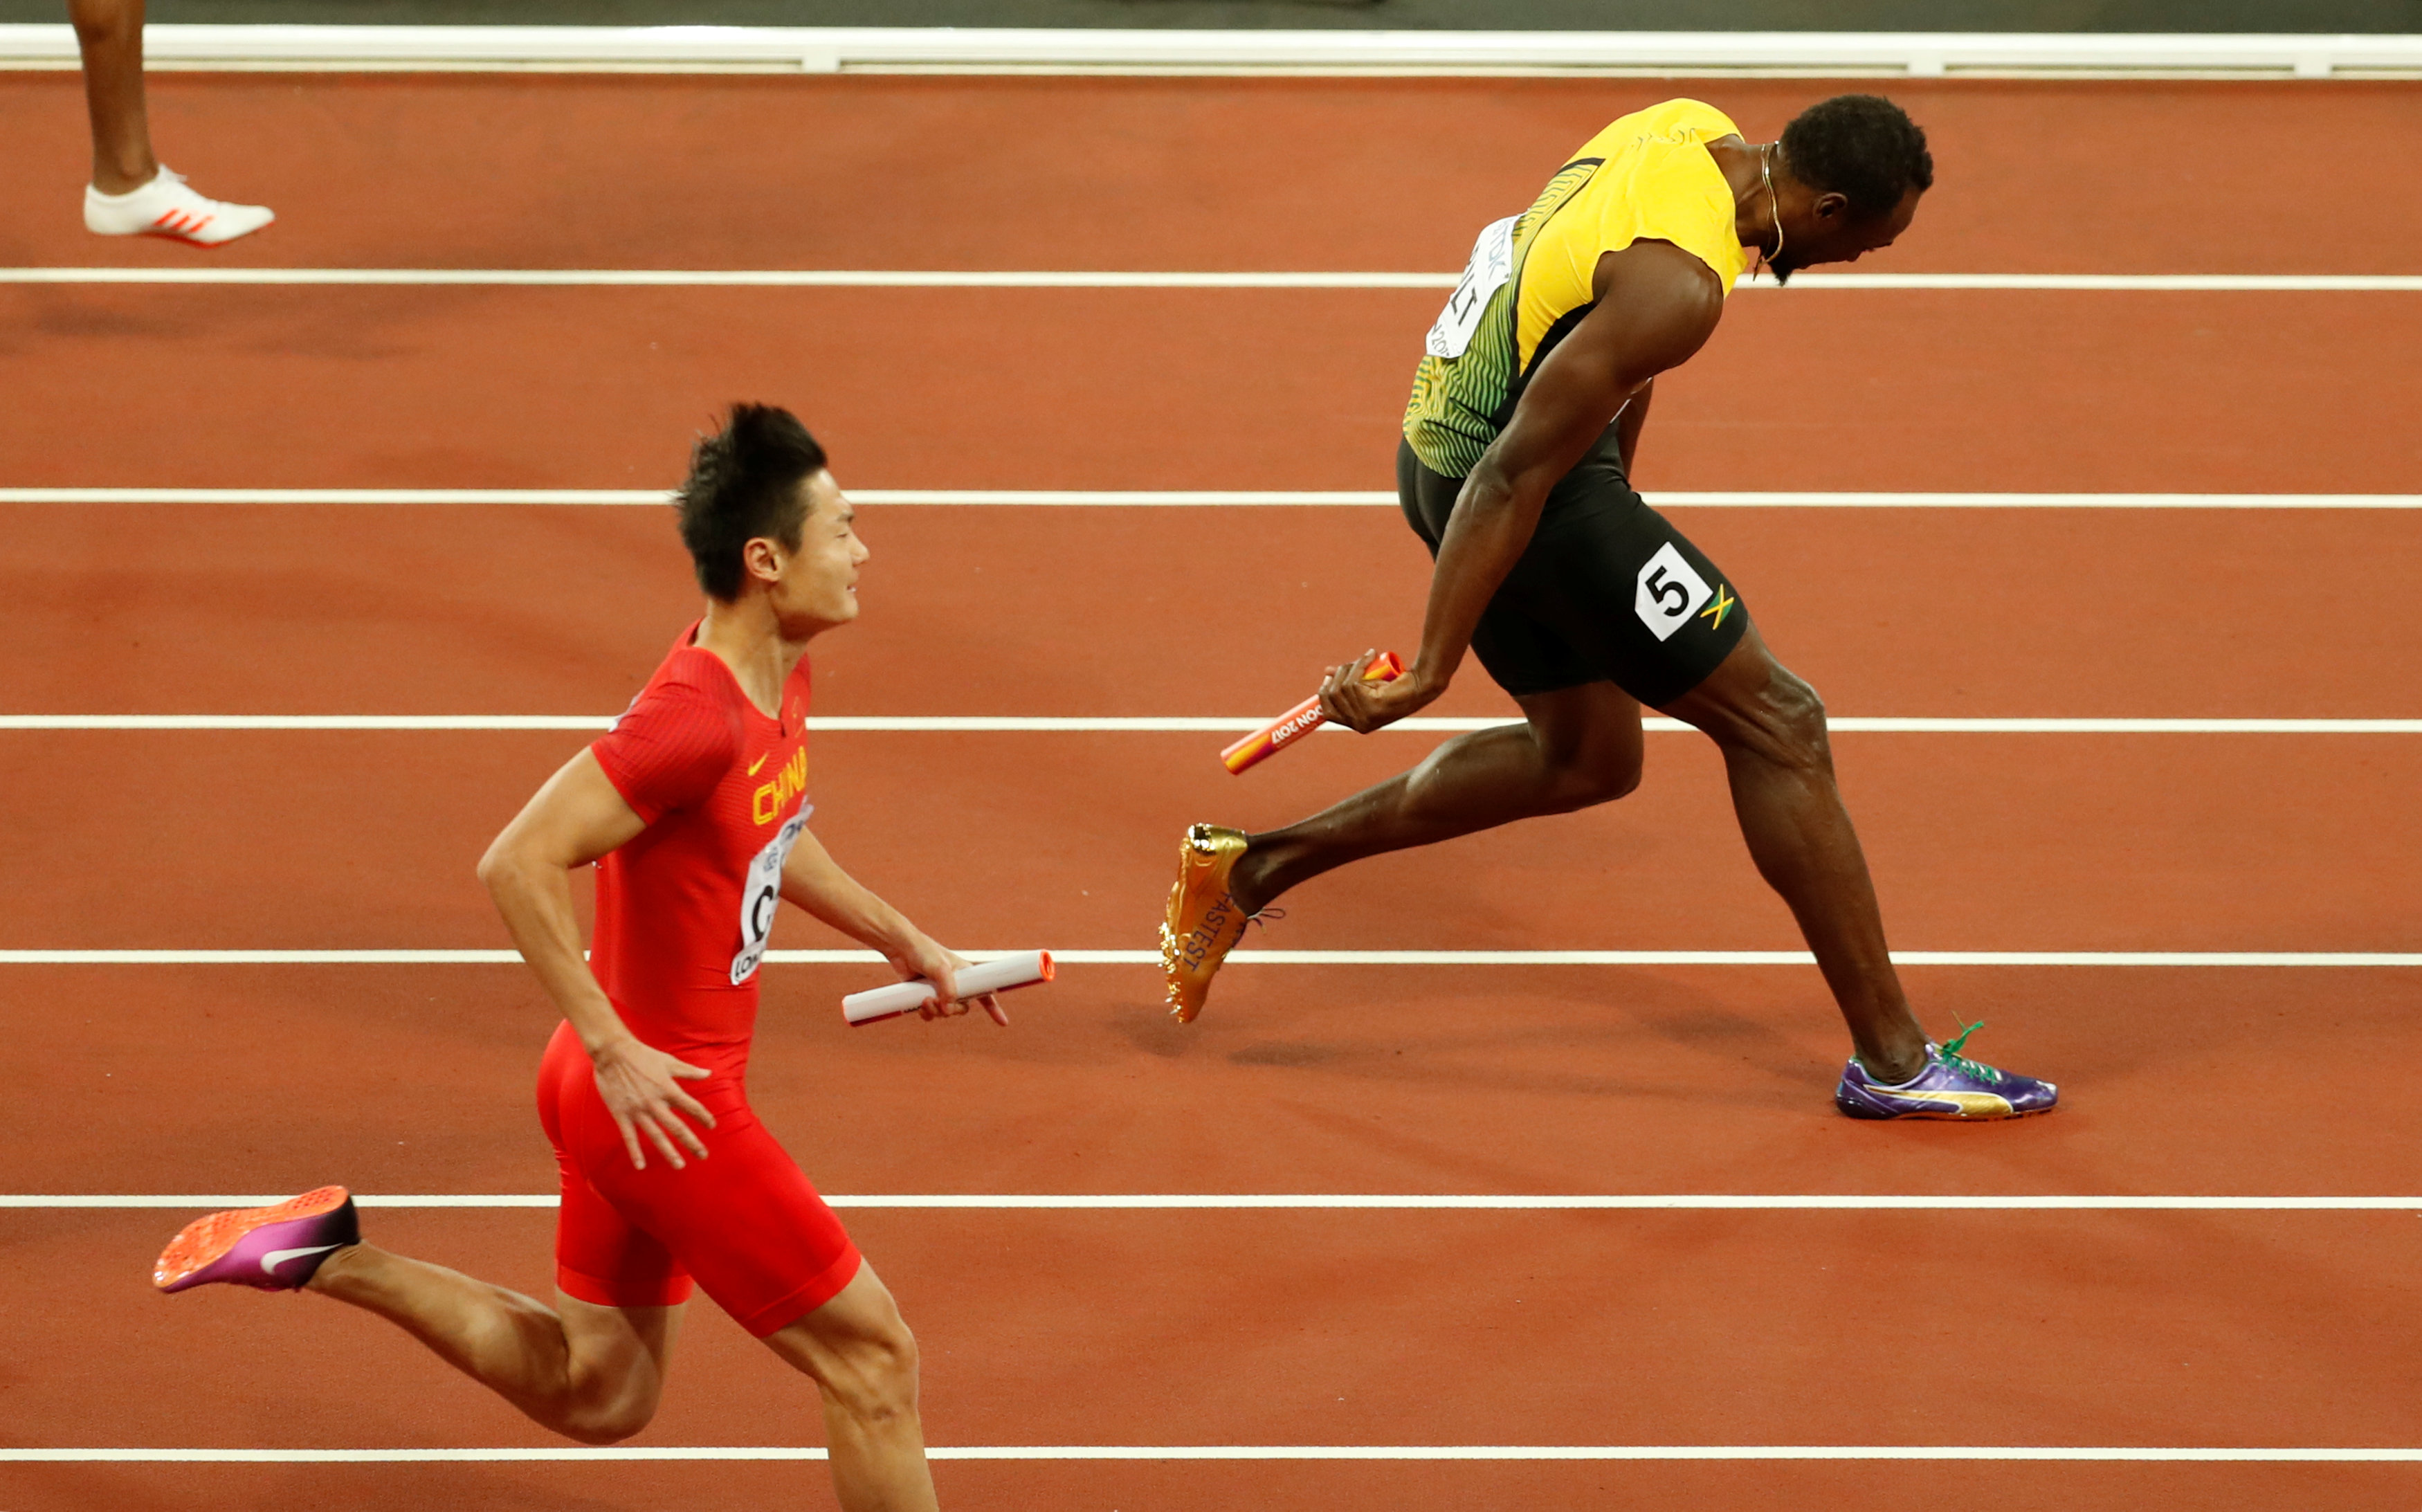 Bolt giảm tốc sau khi cố gắng chạy bằng những bước chân tập tễnh. Ảnh: REUTERS